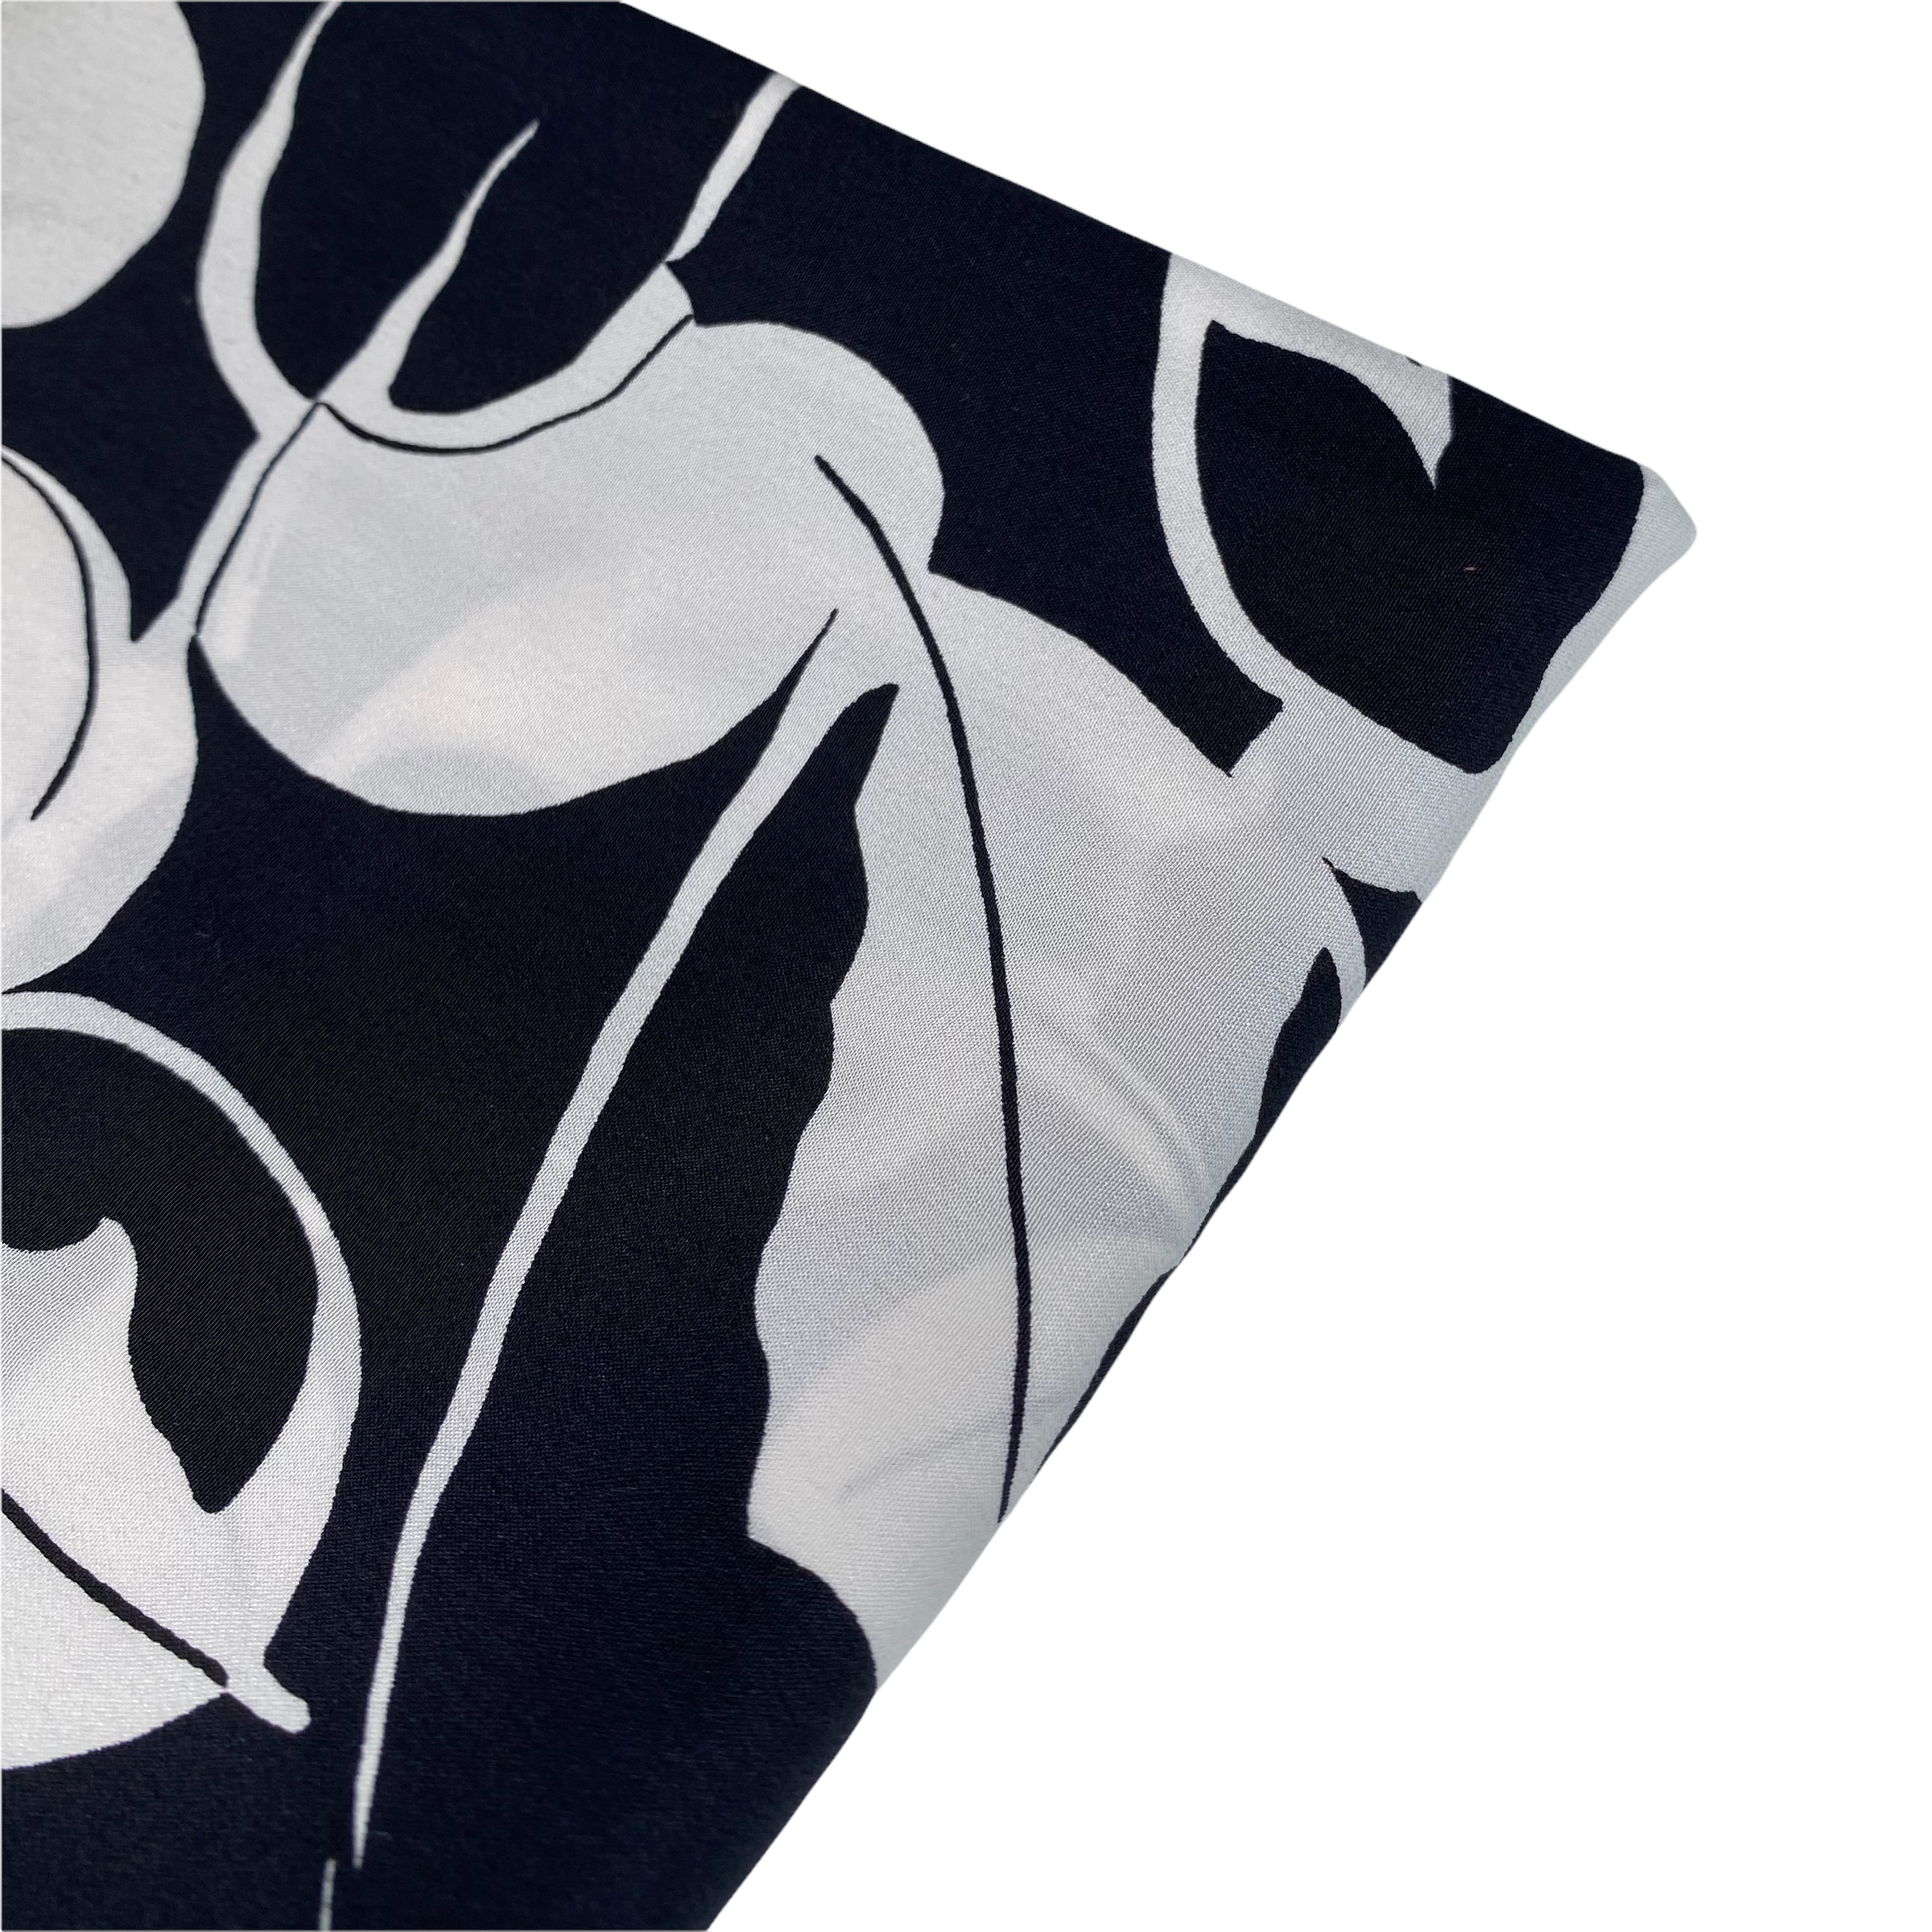 Printed Silk Georgette - Leaves - Black/White